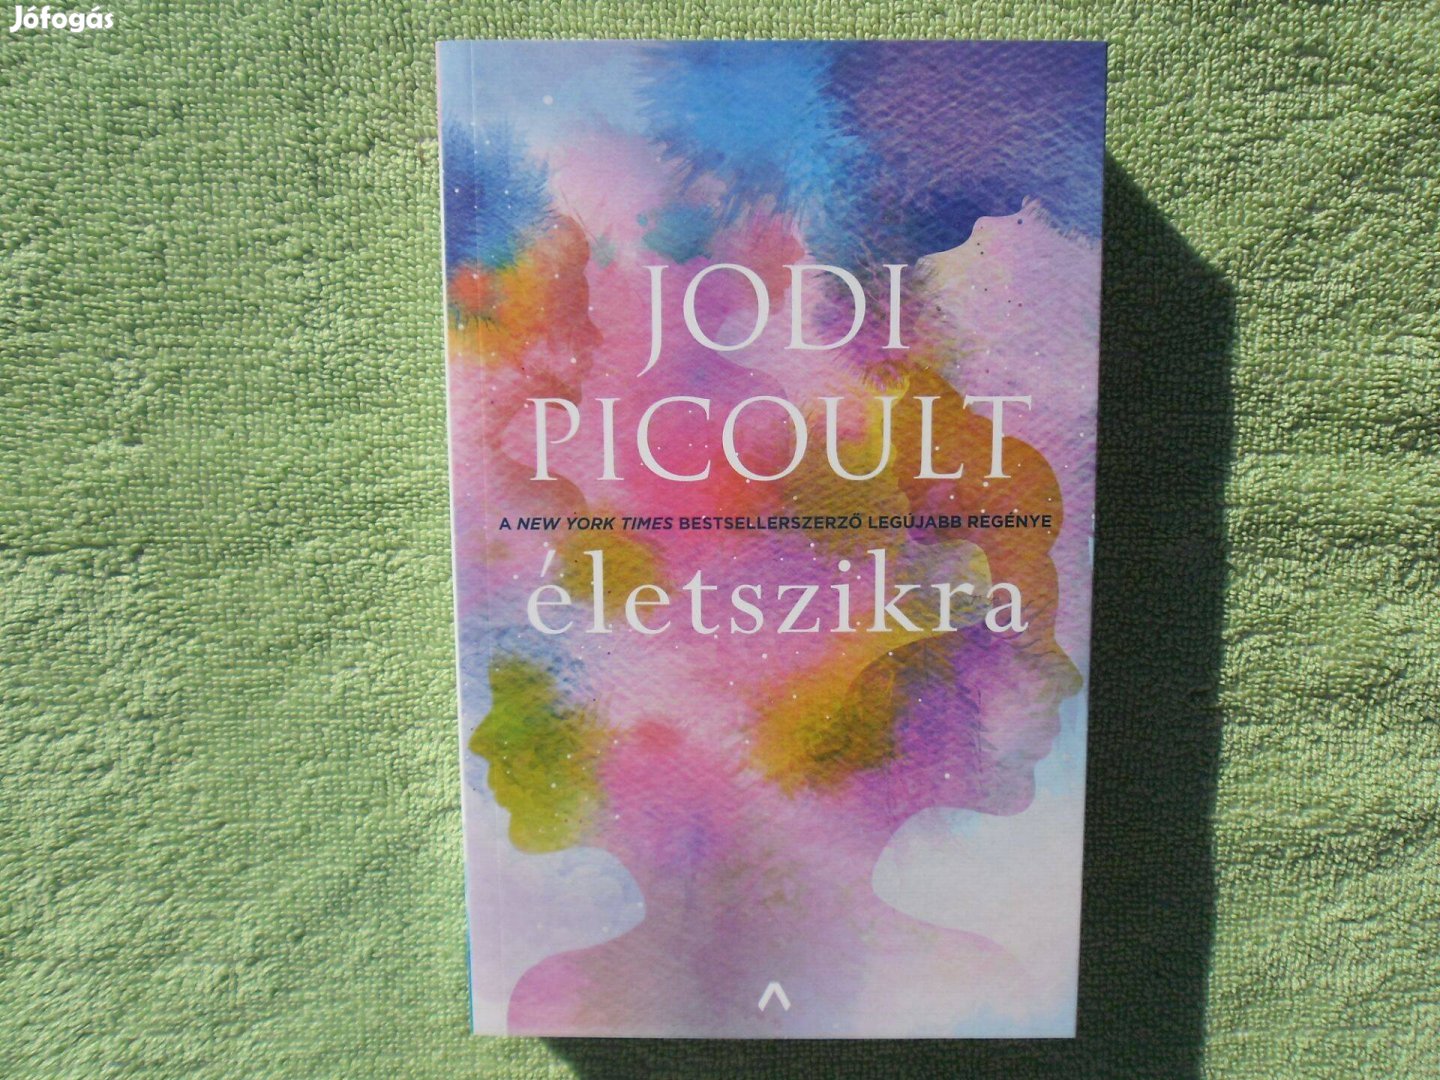 Jodi Picoult: Életszikra